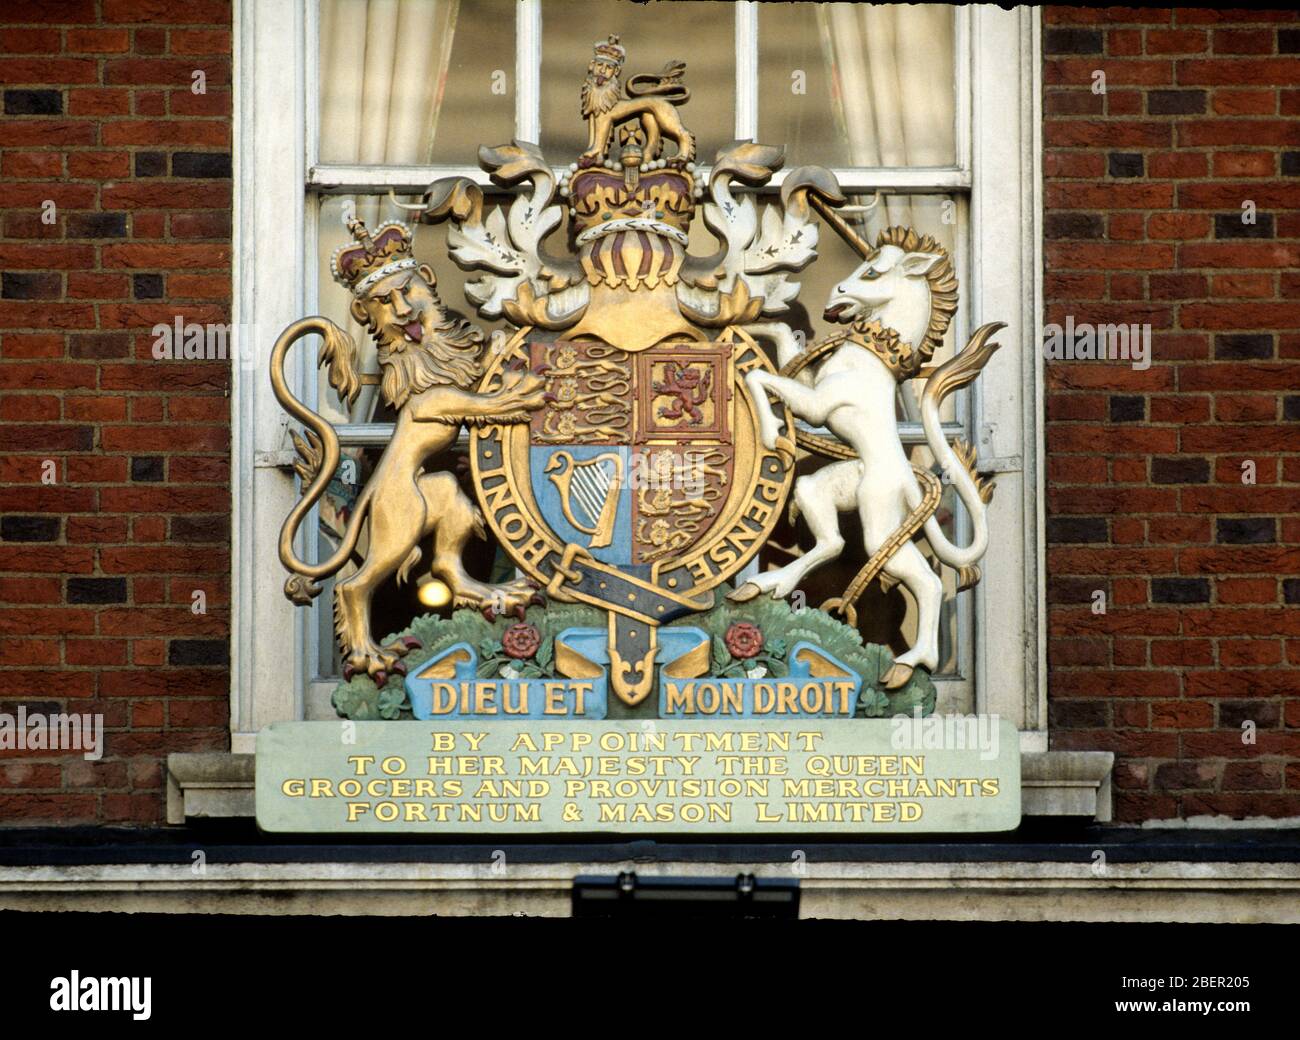 Mandat royal de nomination à sa Majesté la reine Elizabeth II, Fortnum & Mason, épiciers et marchands de provision, Londres, Angleterre. Banque D'Images